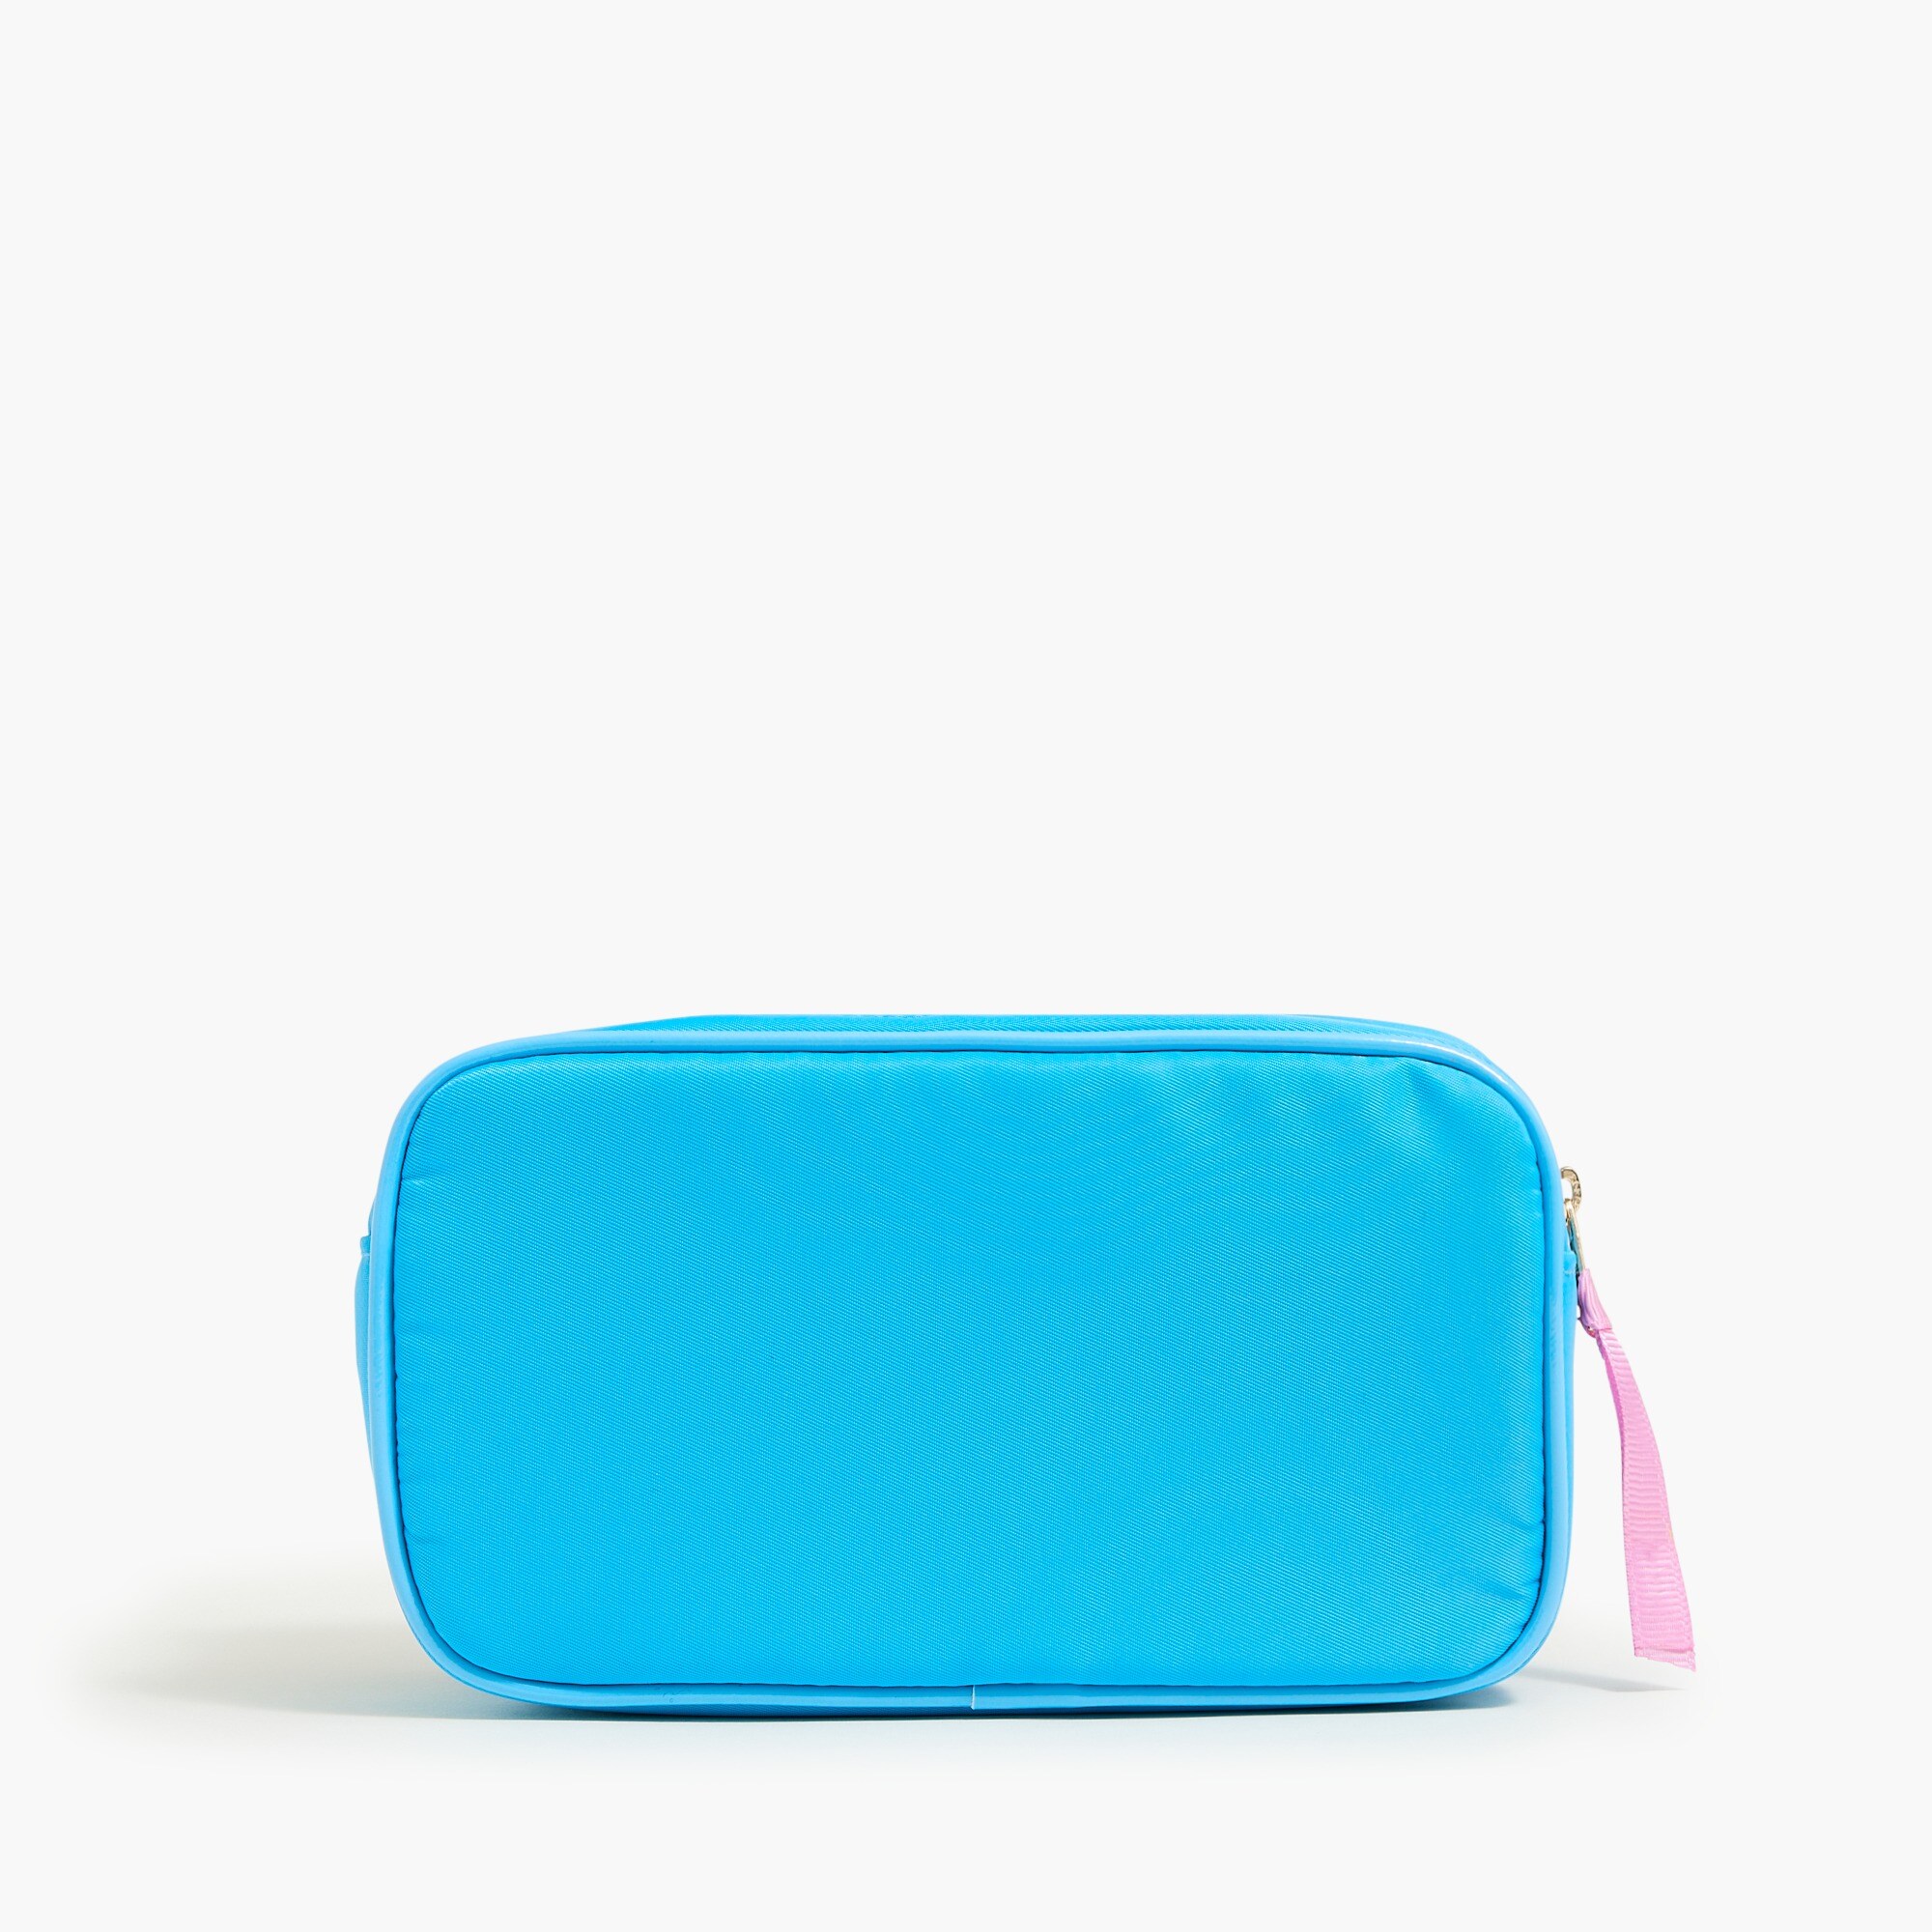  Medium customizable pouch